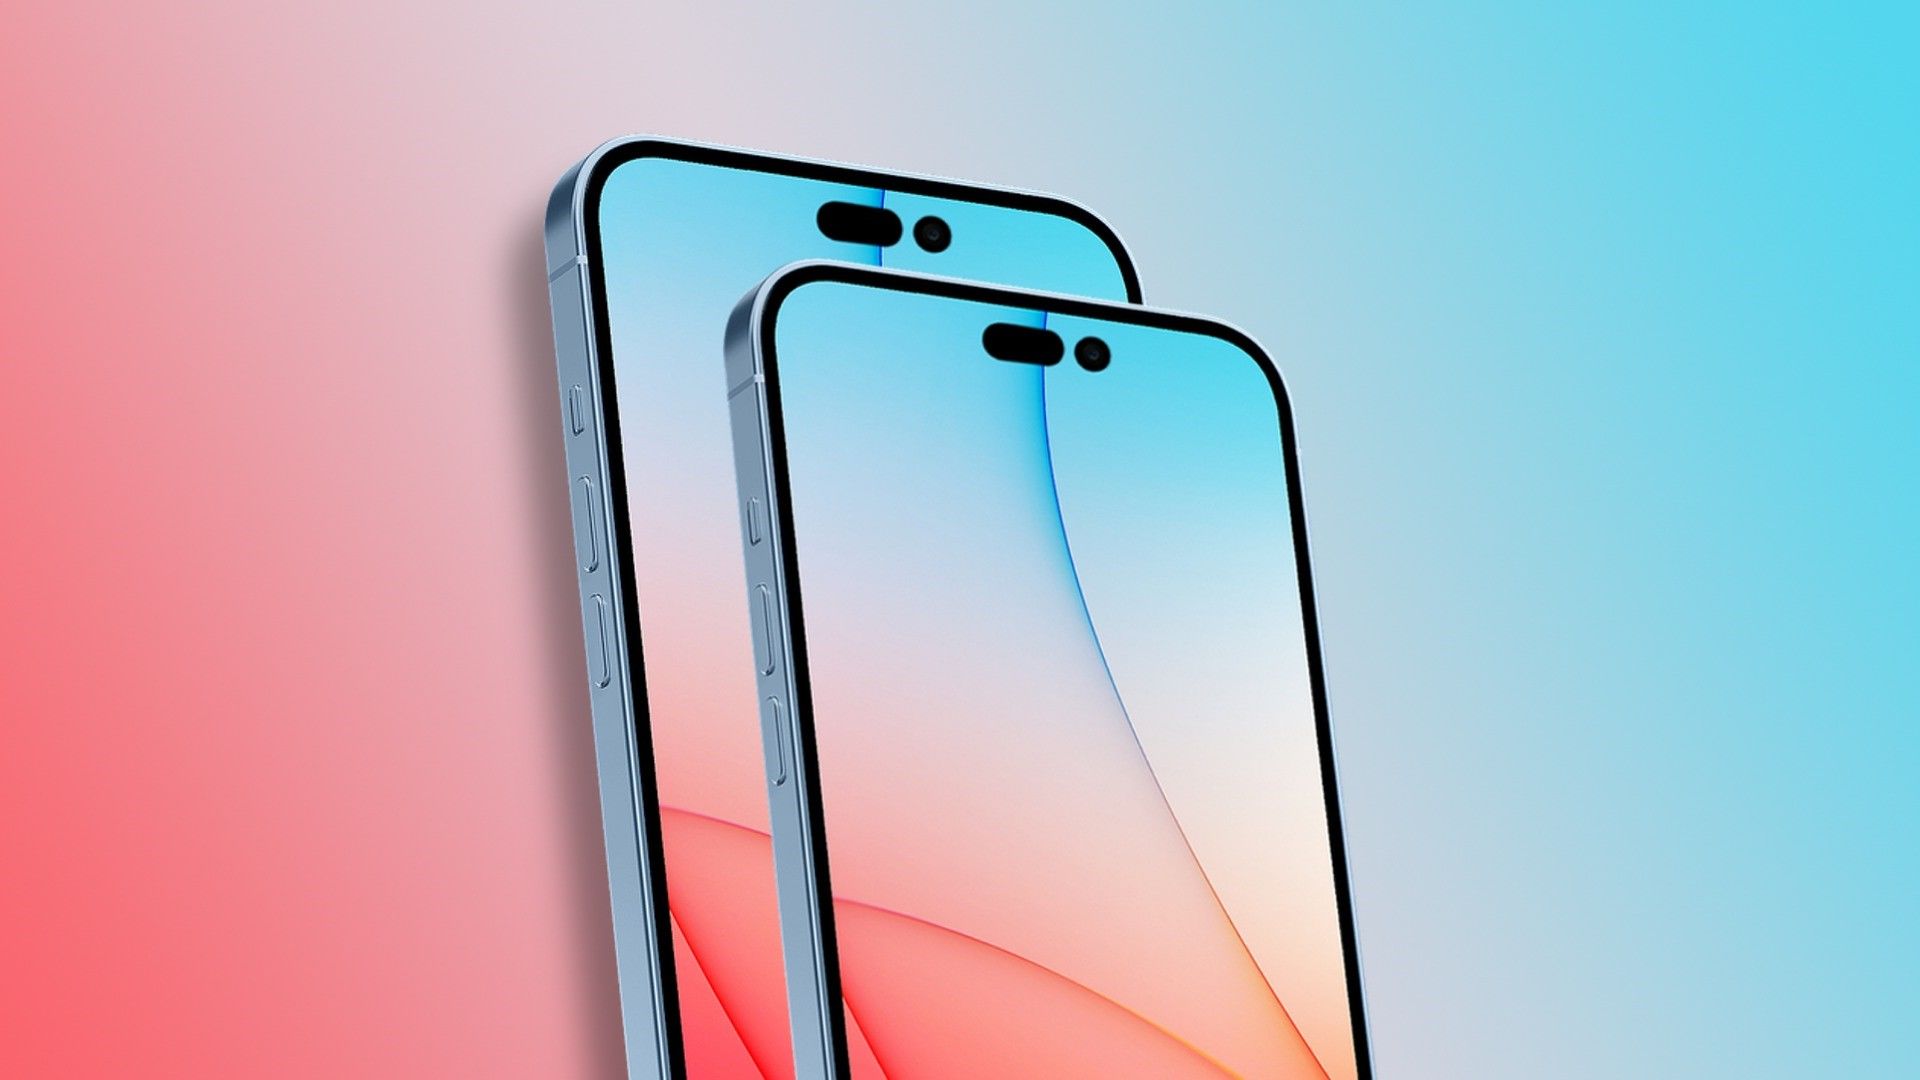 Màn hình của iPhone 12 61 inch sẽ sử dụng tấm nền OLED của LG